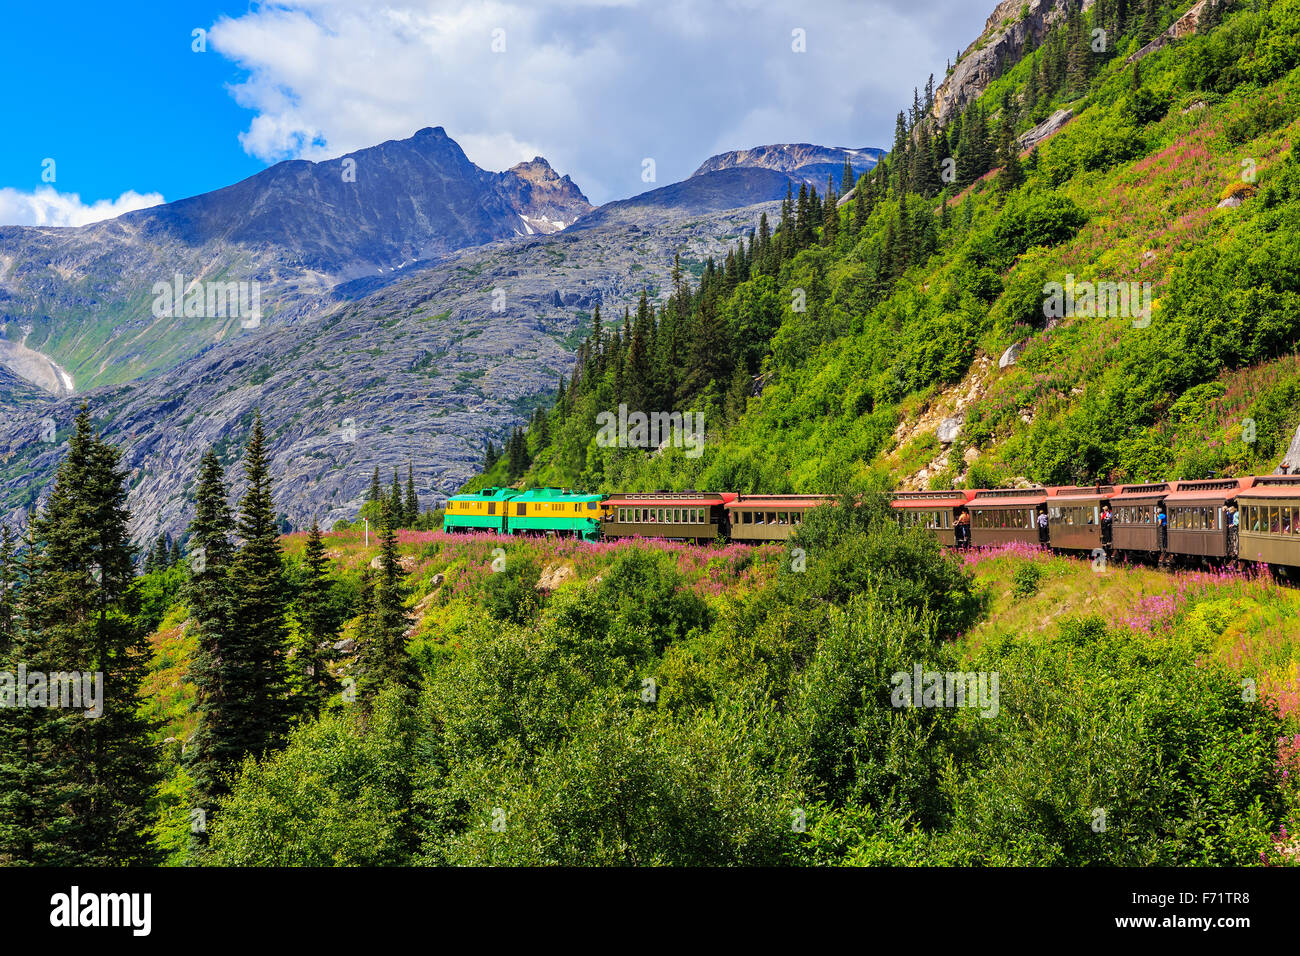 La ville pittoresque de White Pass & Yukon Route Railroad. Skagway, Alaska Banque D'Images